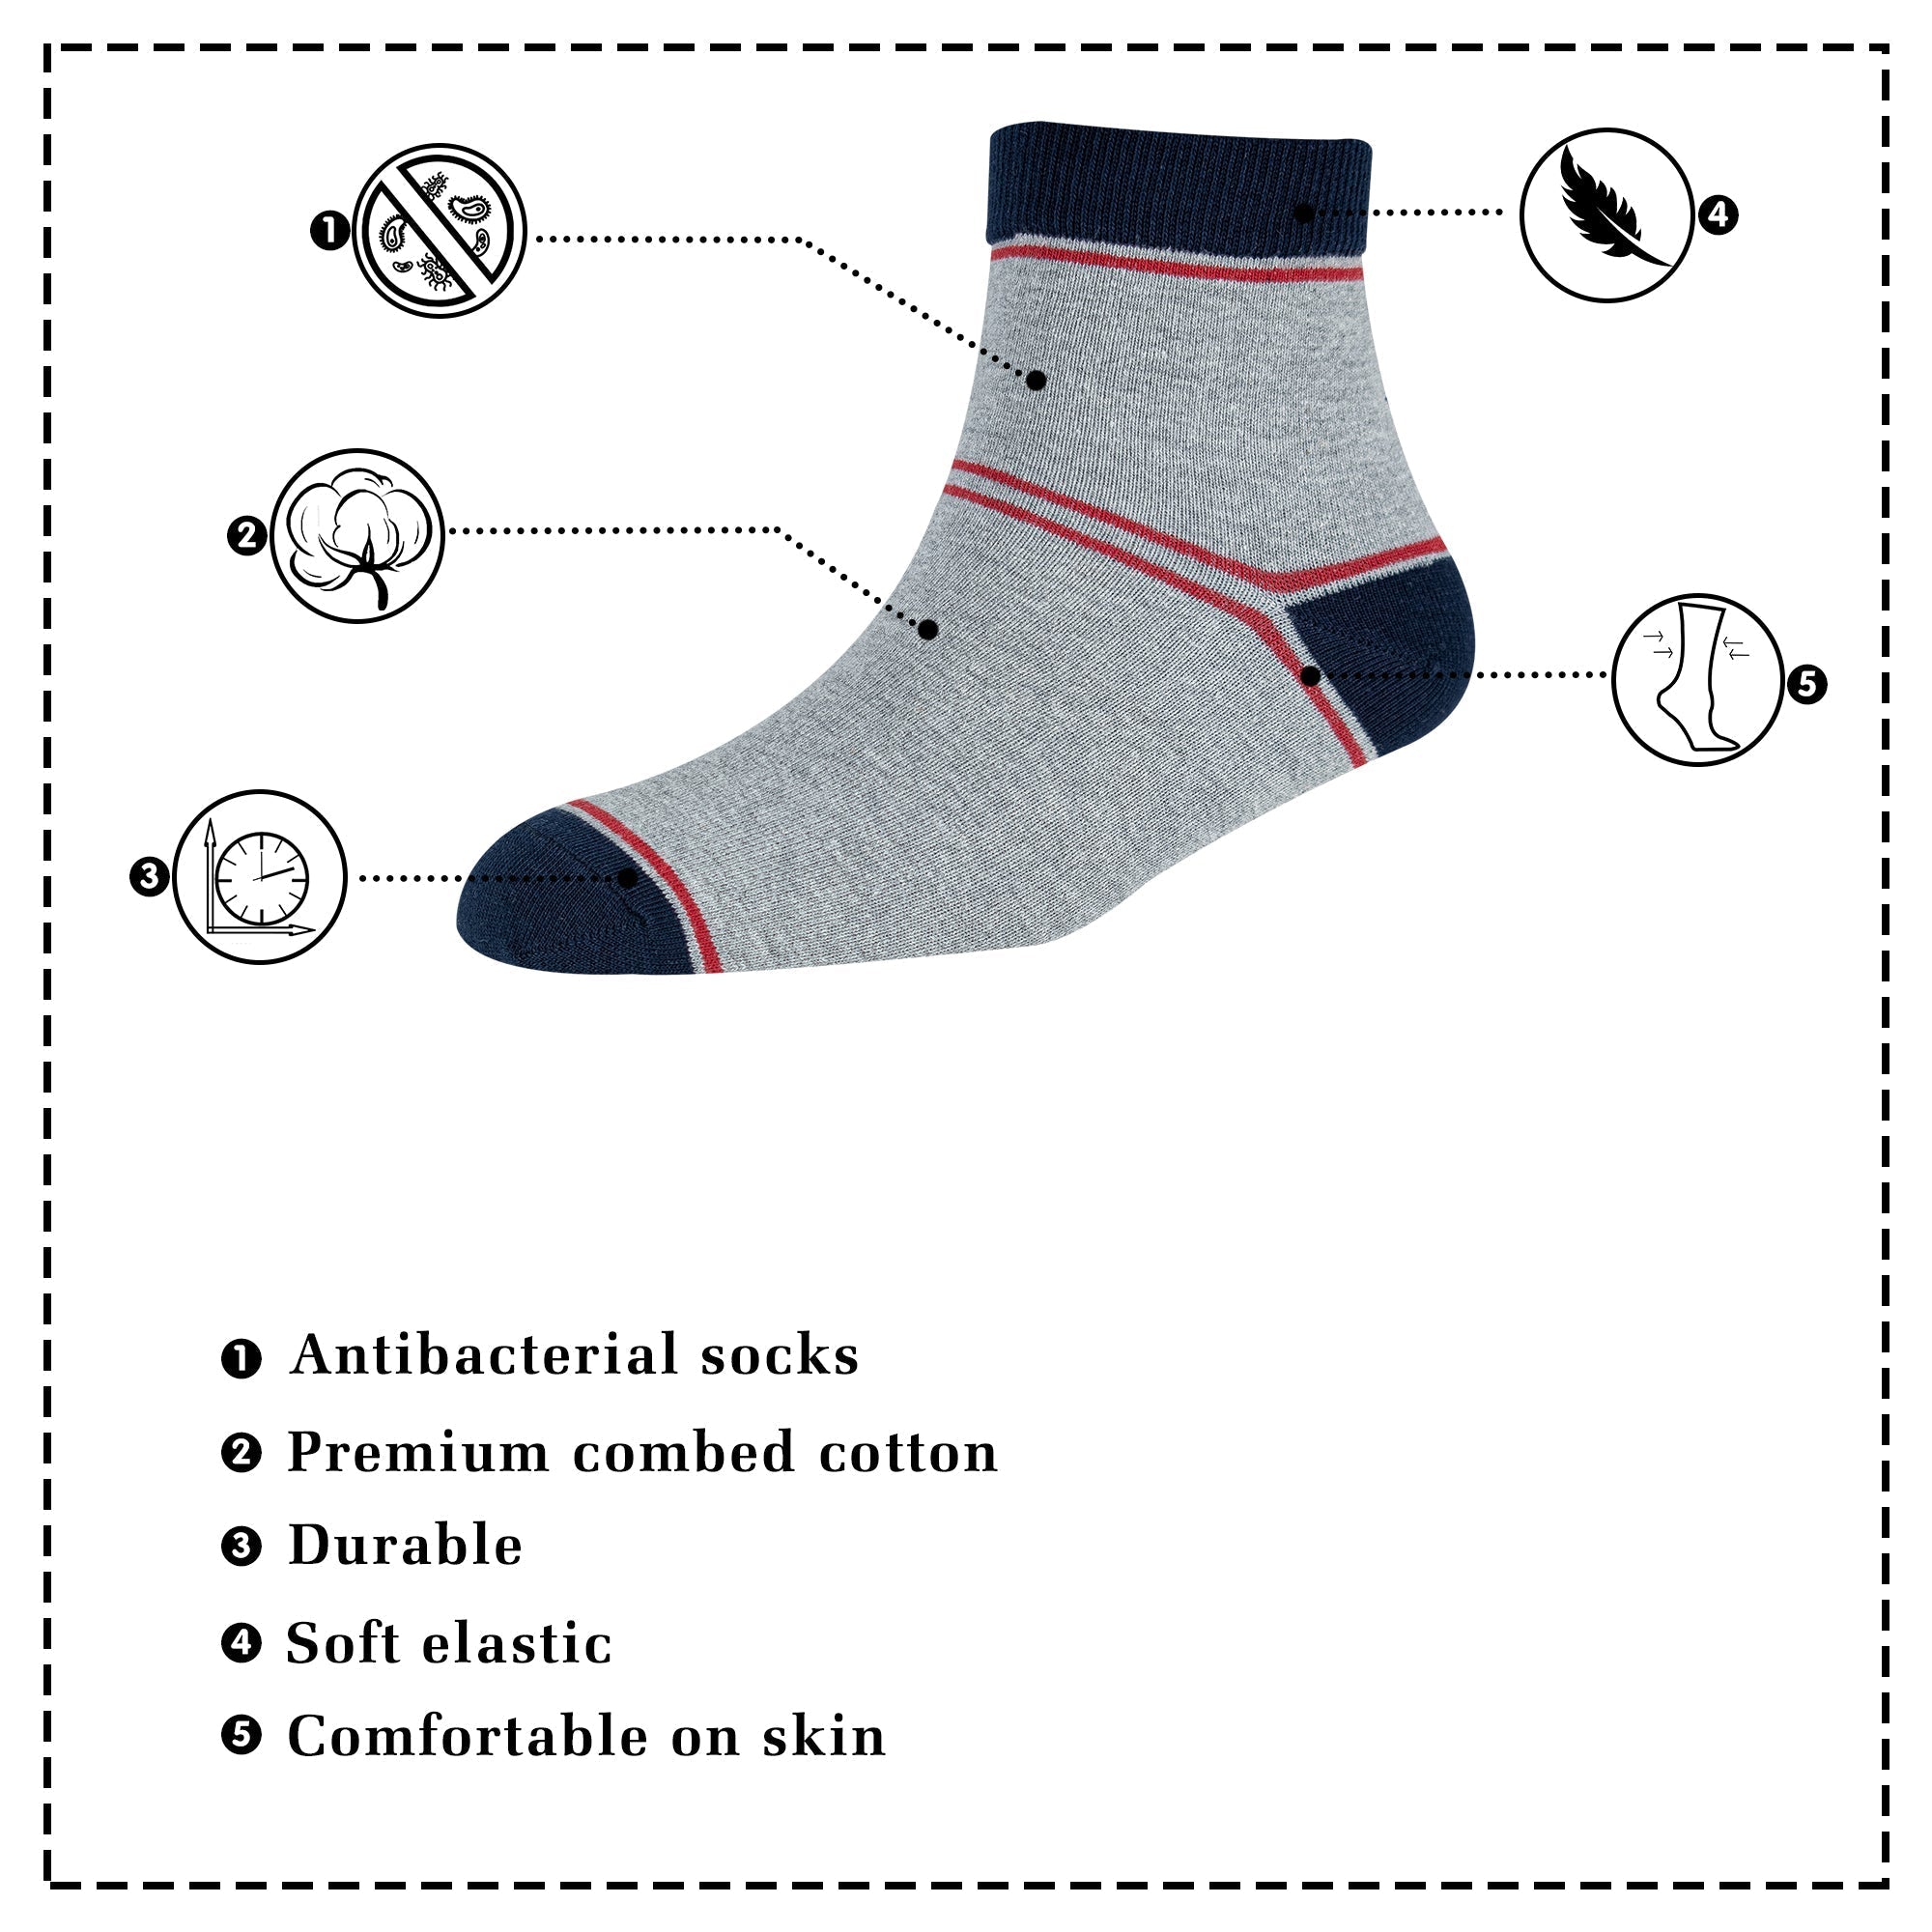 Men's AL031 Pack of 3 Ankle Socks